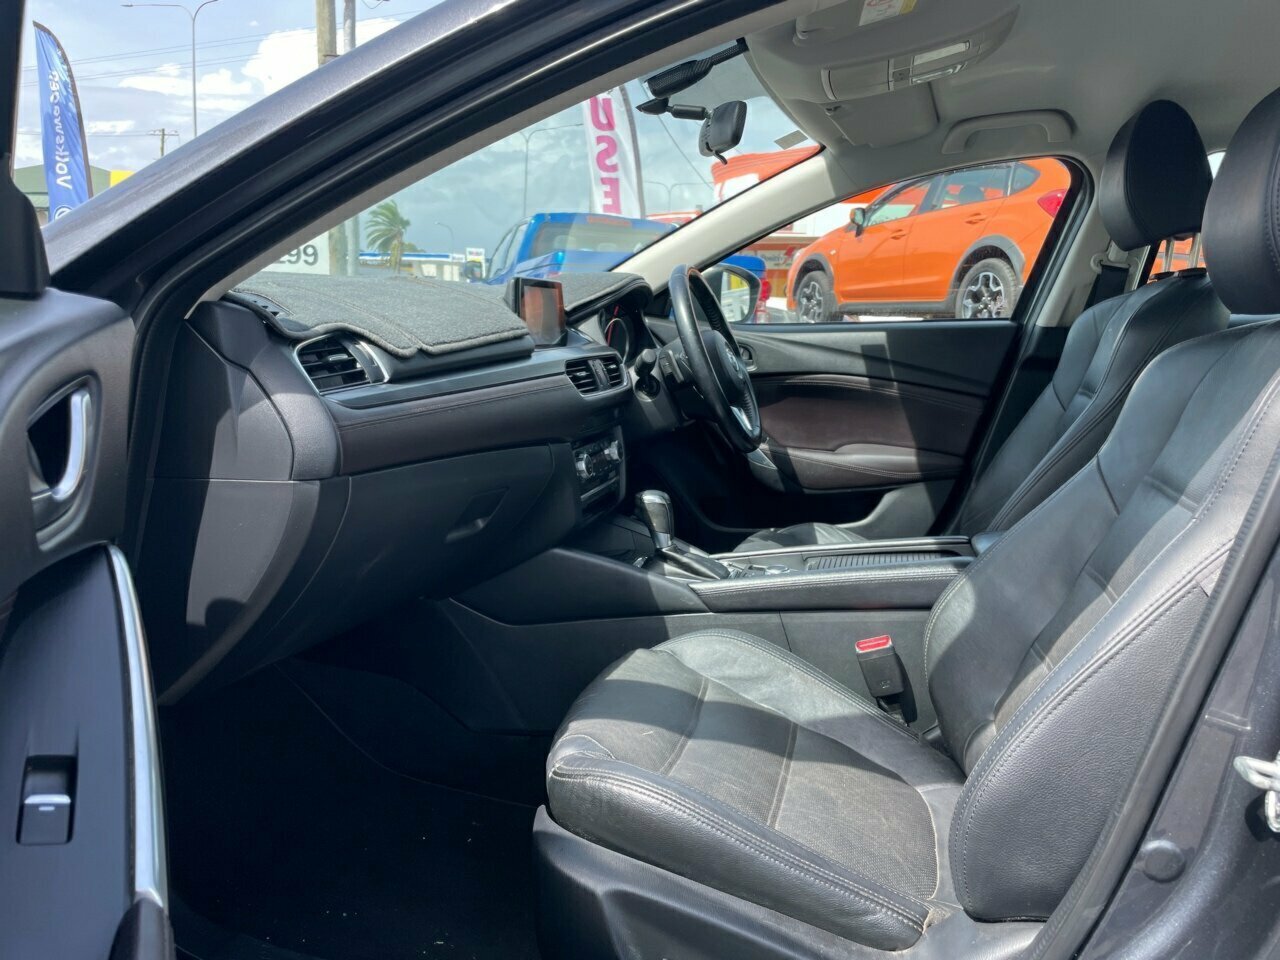 2015 Mazda 6 GJ1032 Touring SKYACTIV-Drive Sedan Image 7